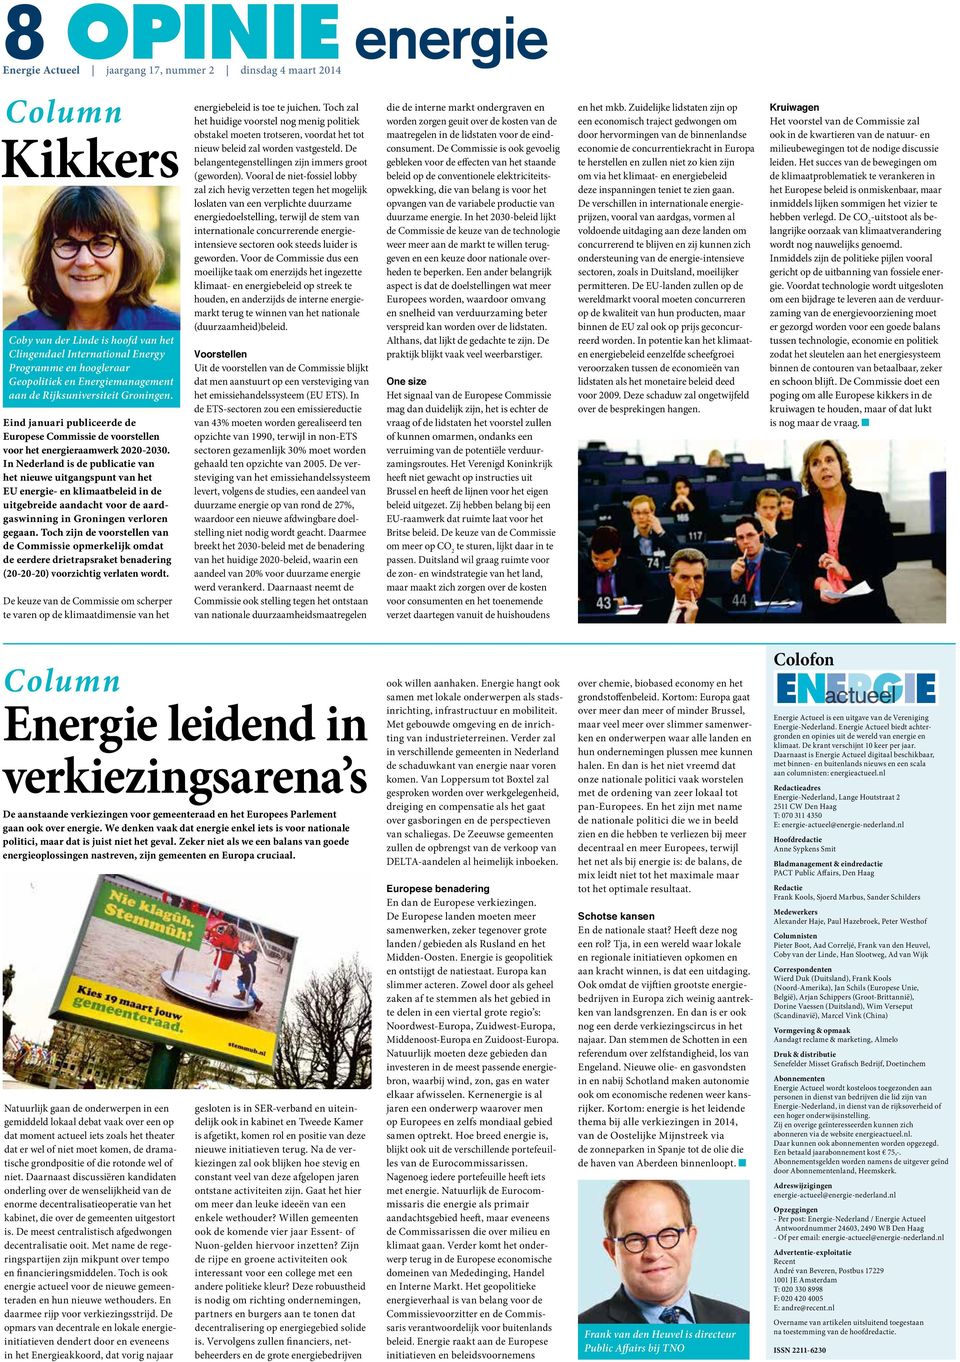 In Nederland is de publicatie van het nieuwe uitgangspunt van het EU energie- en klimaatbeleid in de uitgebreide aandacht voor de aardgaswinning in Groningen verloren gegaan.